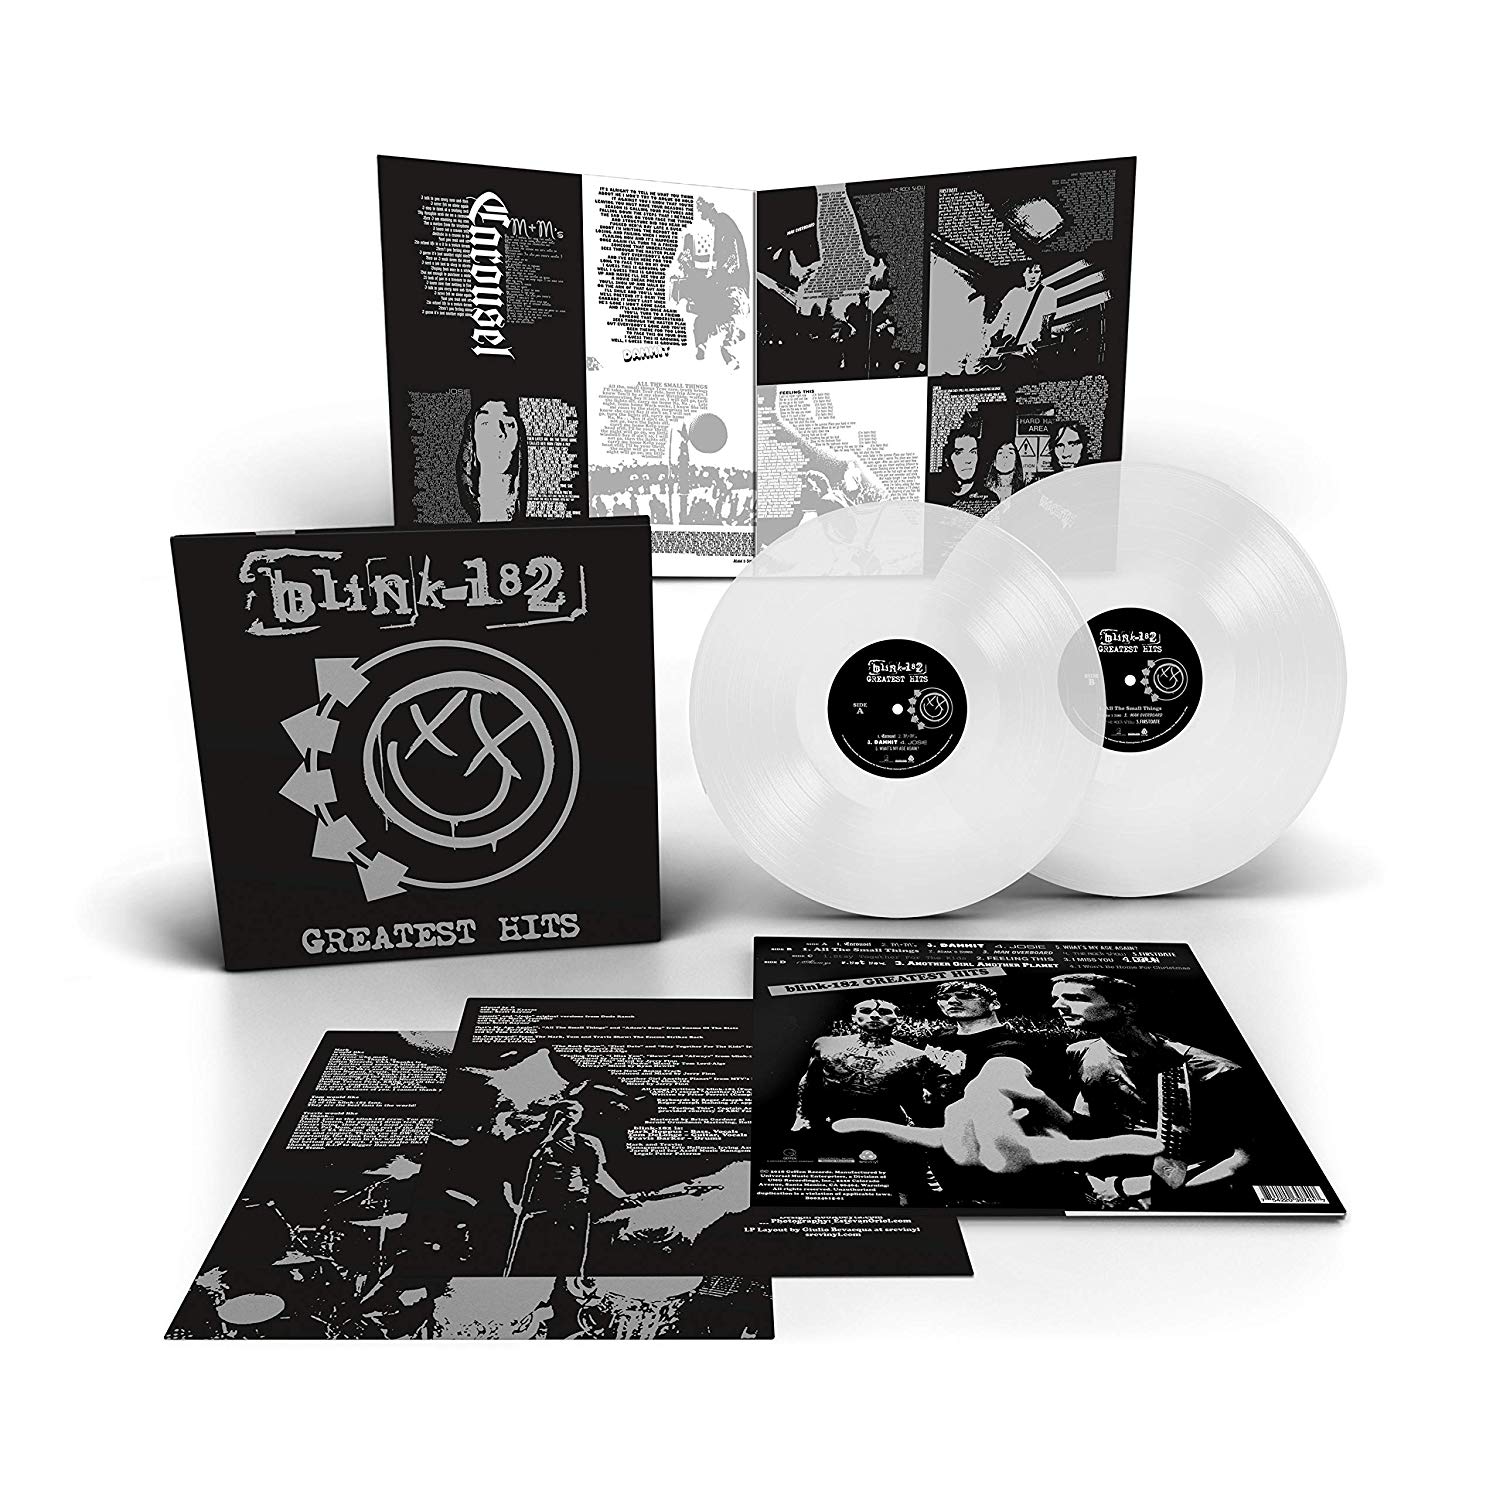 Blink-182 - Greatest Hits | Upcoming Vinyl (December 14, 2018)